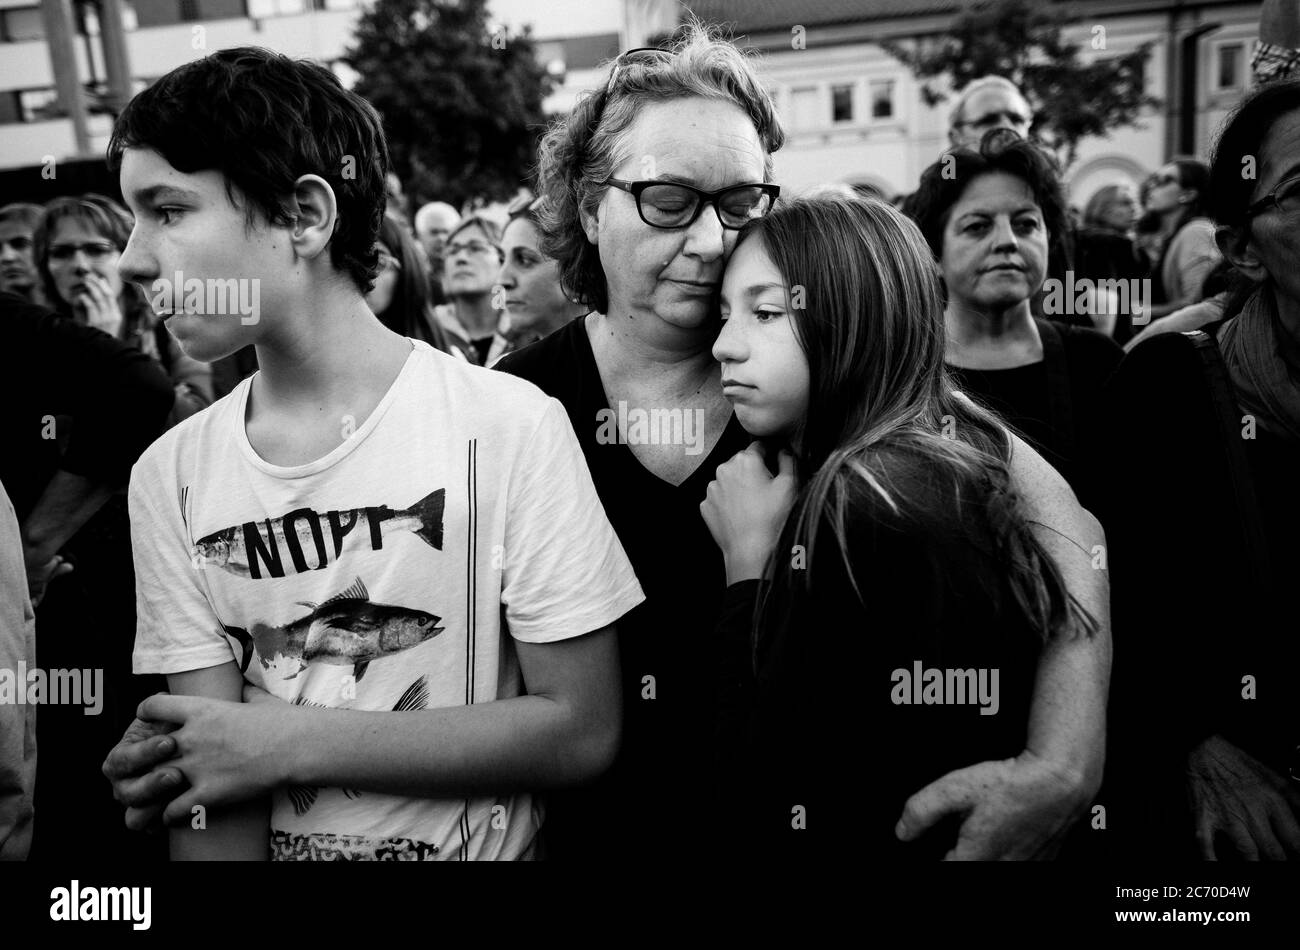 Blanca, miembro de la Asamblea Nacional Catalana, abraza a sus hijos durante una manifestación en defensa del modelo escolar catalán en Olot, España. Fecha: 25/10/2017. Foto: Xabier Mikel Laburu. Foto de stock